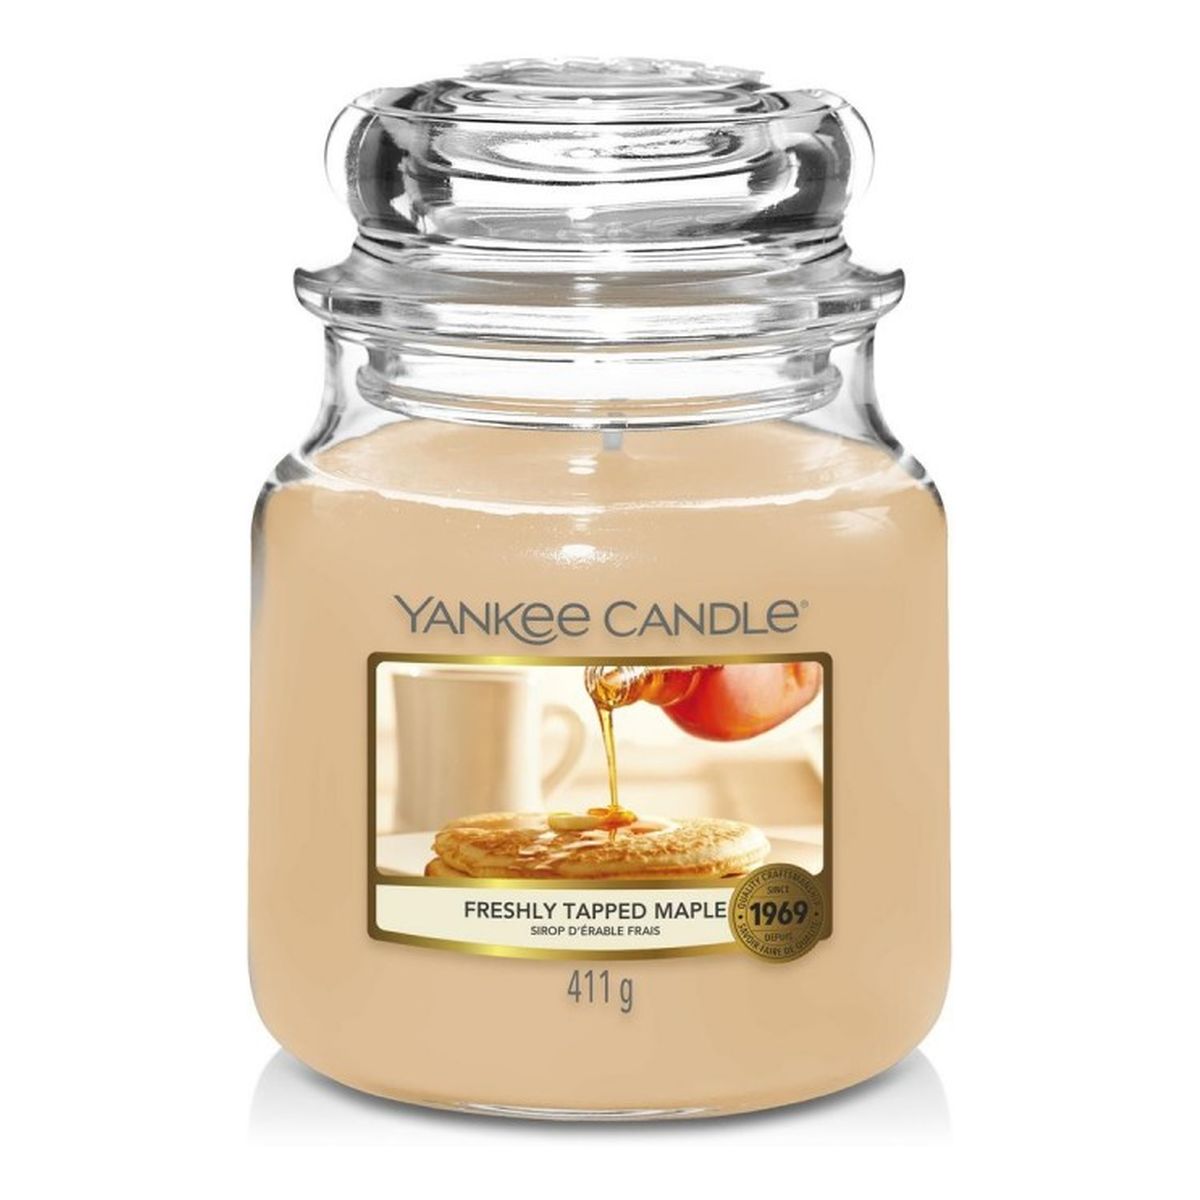 Yankee Candle Świeca zapachowa średni słój freshly tapped maple 411g